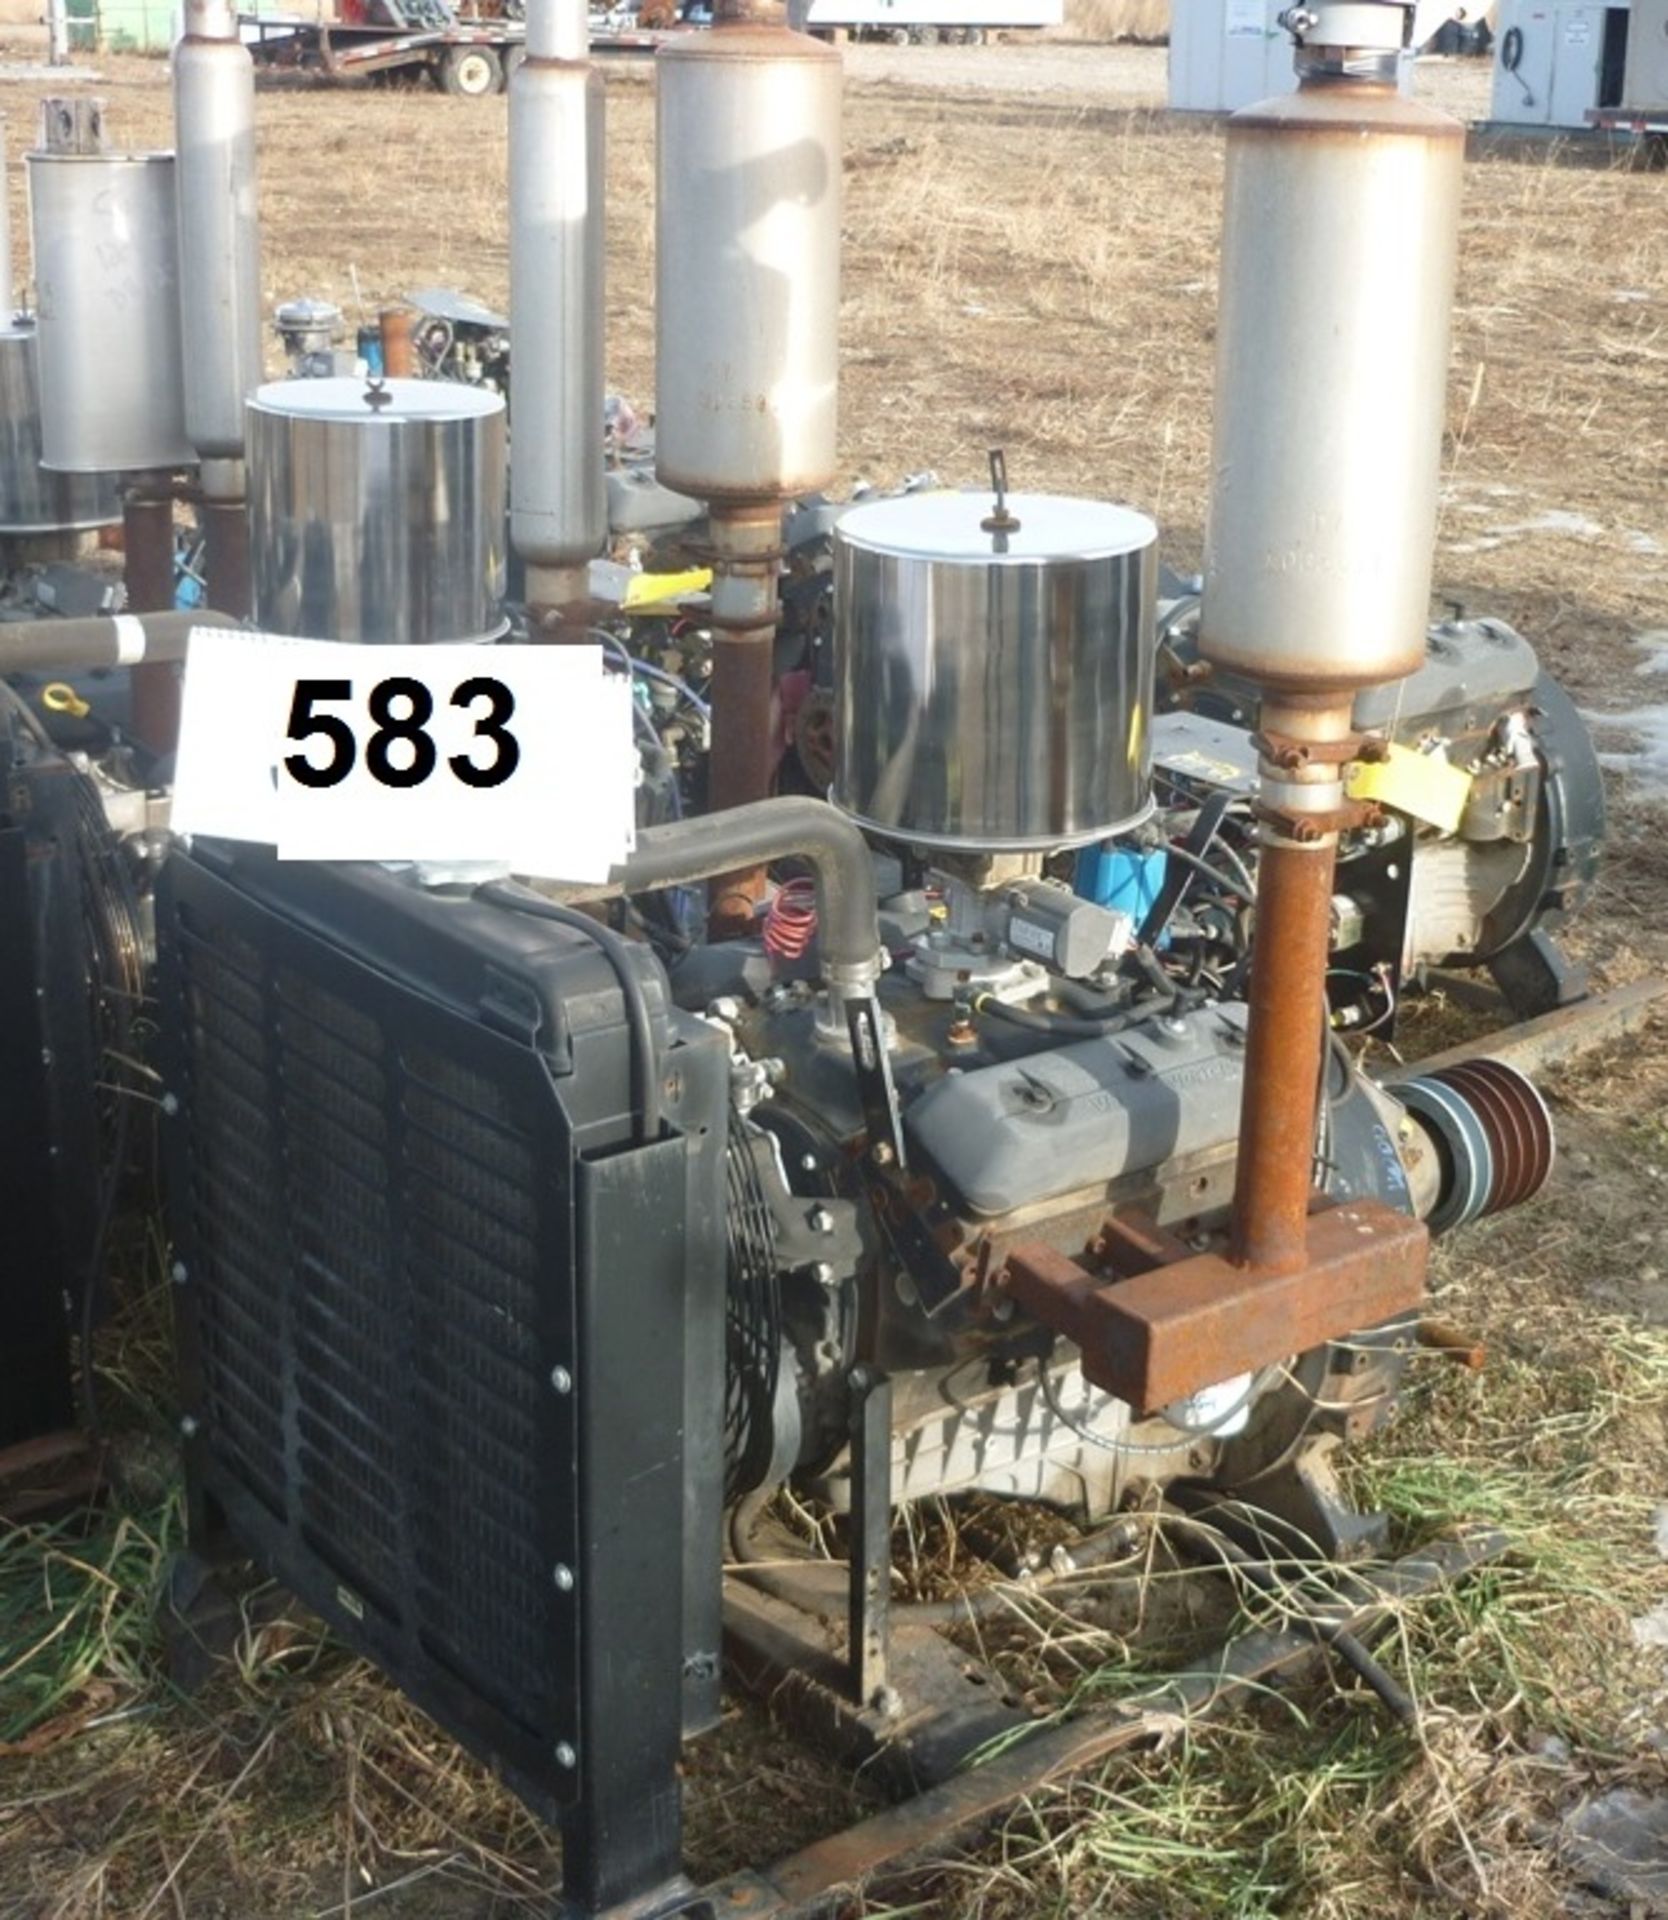 GM V6 VORTEC ENGINE W/ TWIN DISC & TRANSMISSION S/N 2046426 - Image 2 of 2